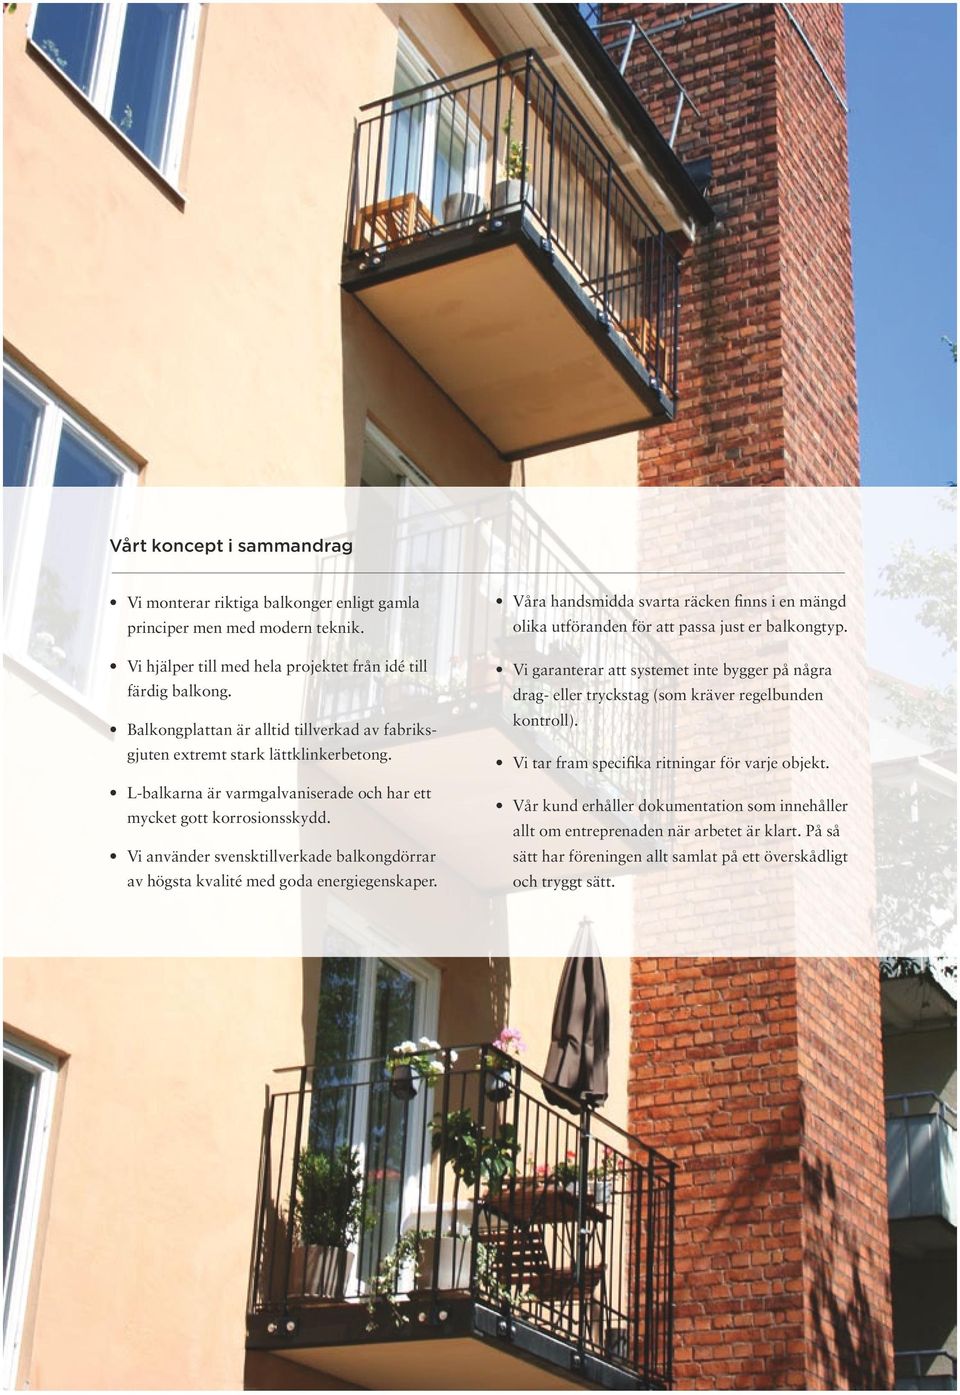 Vi använder svensktillverkade balkongdörrar av högsta kvalité med goda energiegenskaper. Våra handsmidda svarta räcken finns i en mängd olika utföranden för att passa just er balkongtyp.